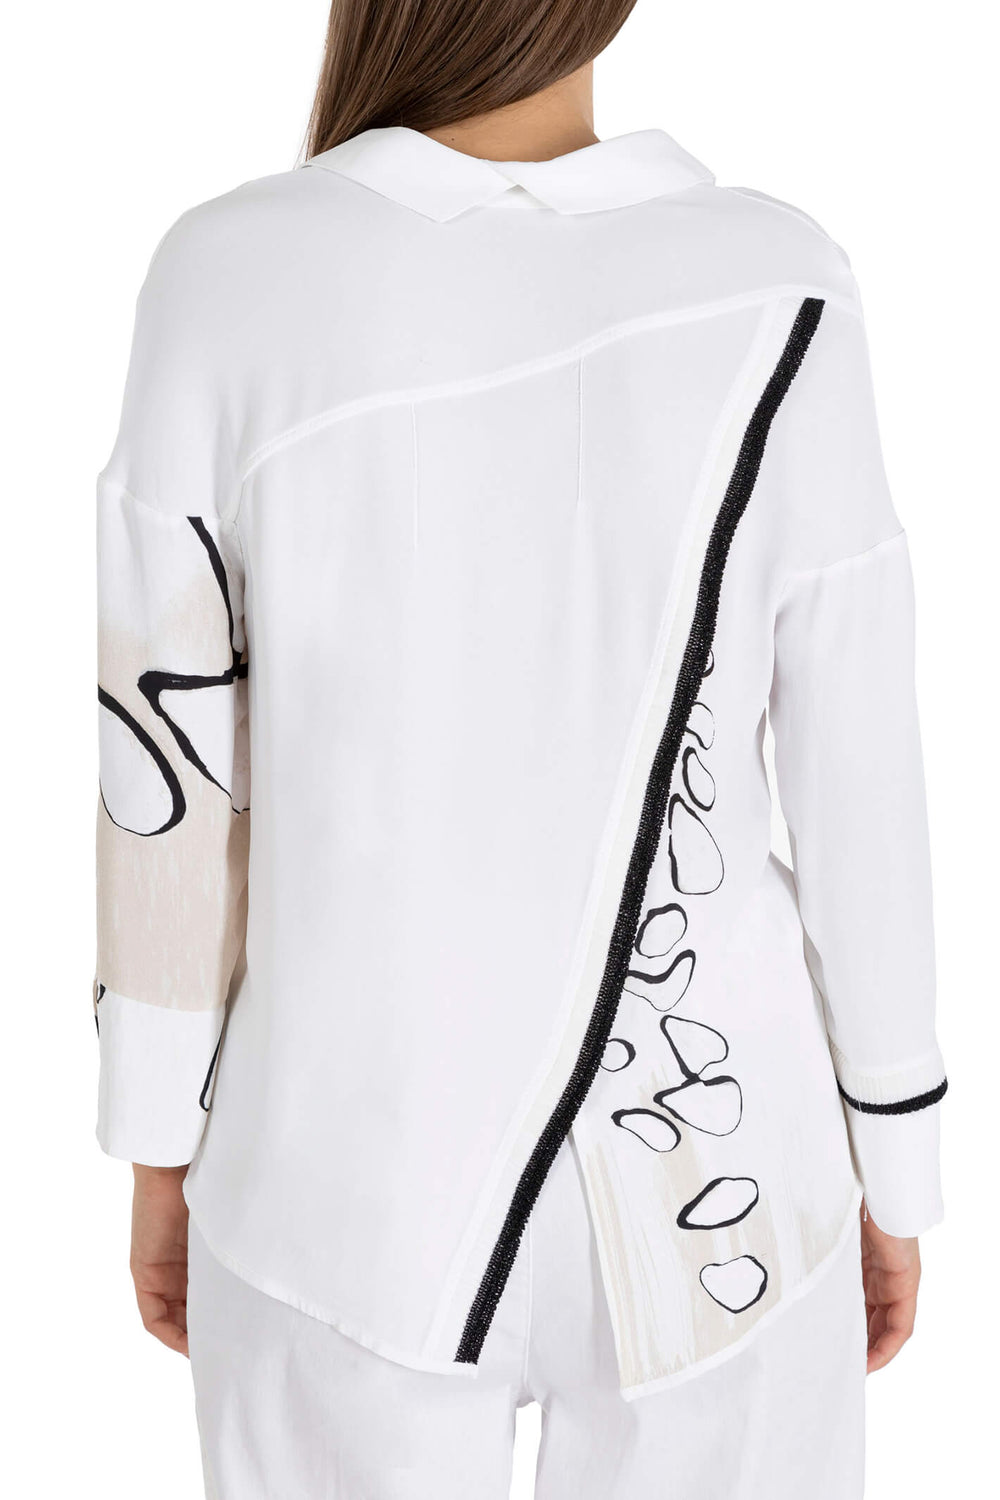 Elisa Cavaletti EJP231059501 White Bubble Shirt - Experience Boutique